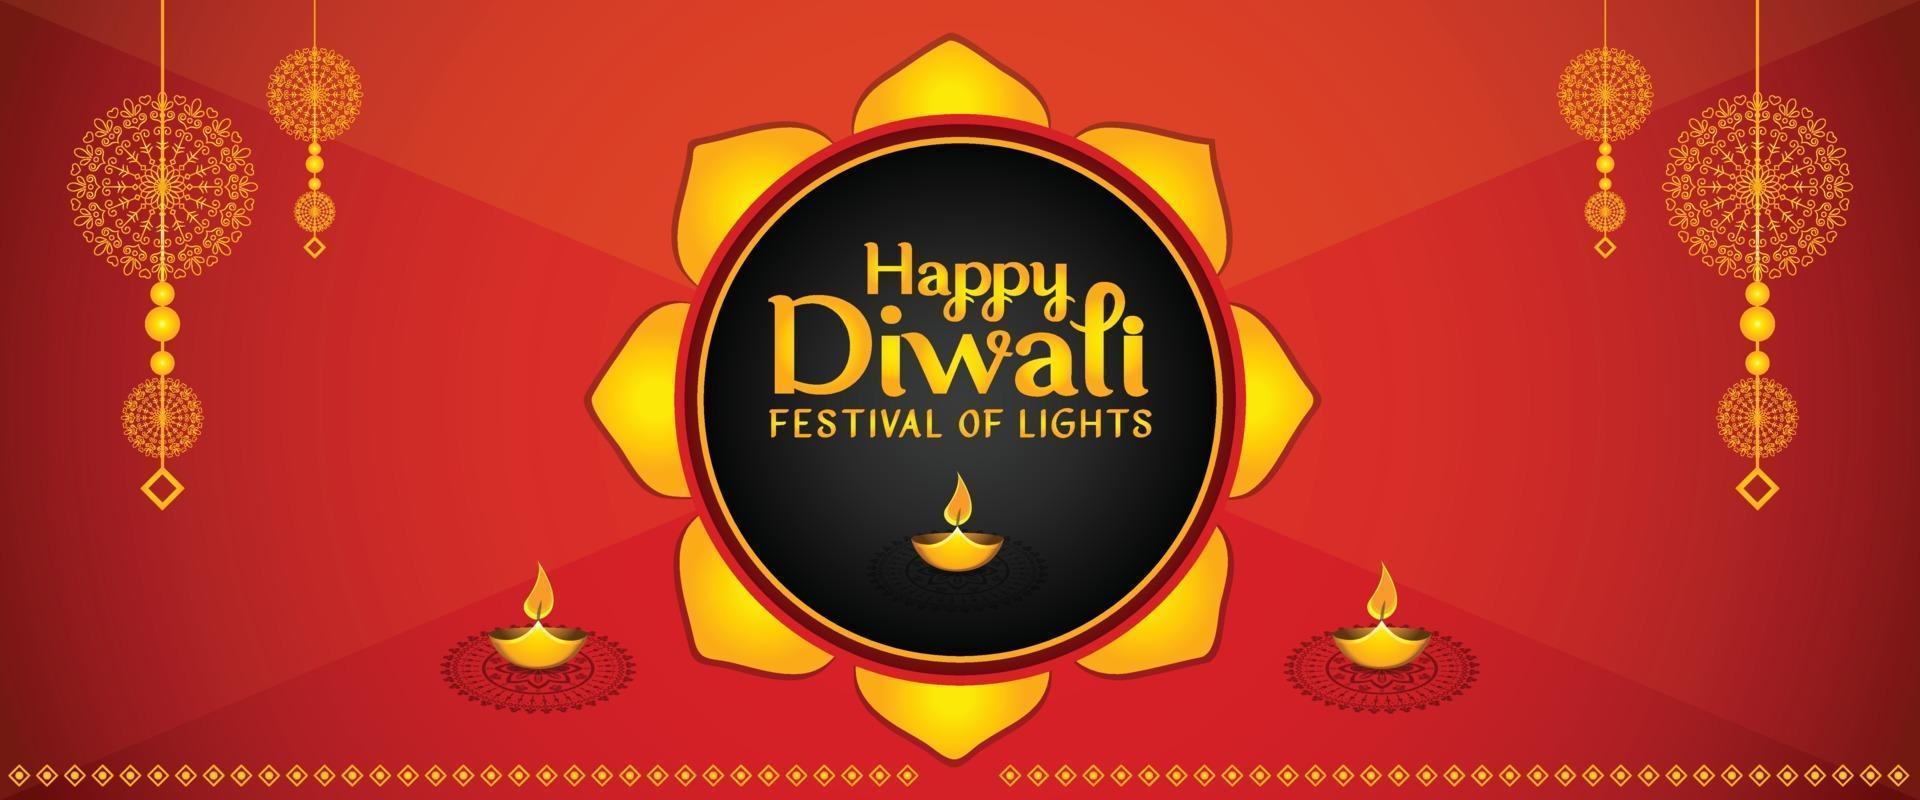 glad diwali gratis vektor banner med prydnadsdekoration